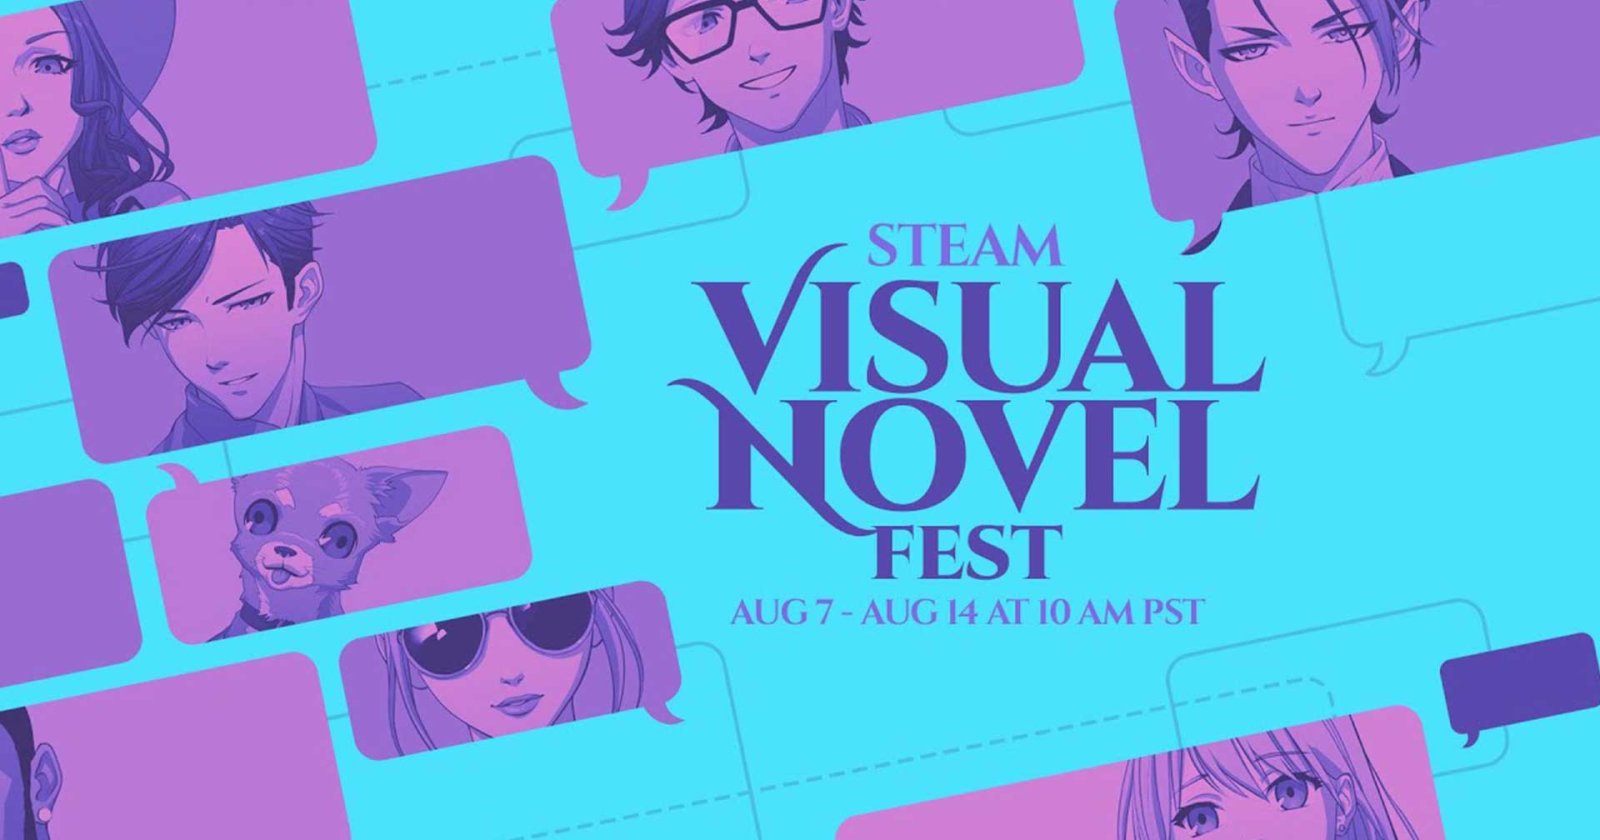 แนะนำเกม Visual Novel น่าซื้อจากเทศกาล Steam Visual Novel Fest